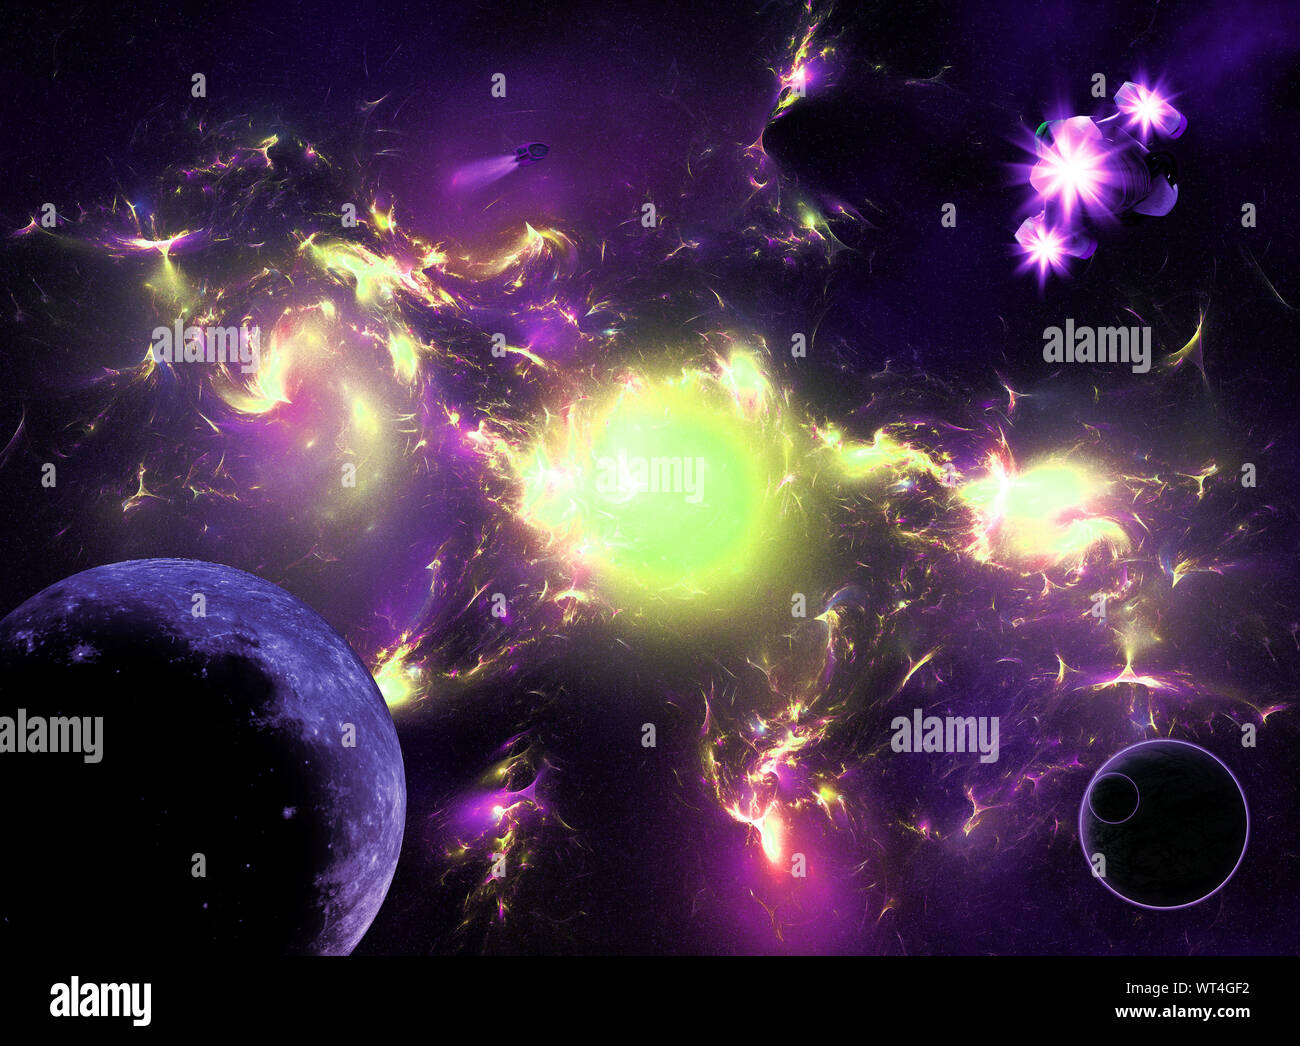 Illustration de l'espace galaxy colorés avec les planètes et les vaisseaux spatiaux. Banque D'Images